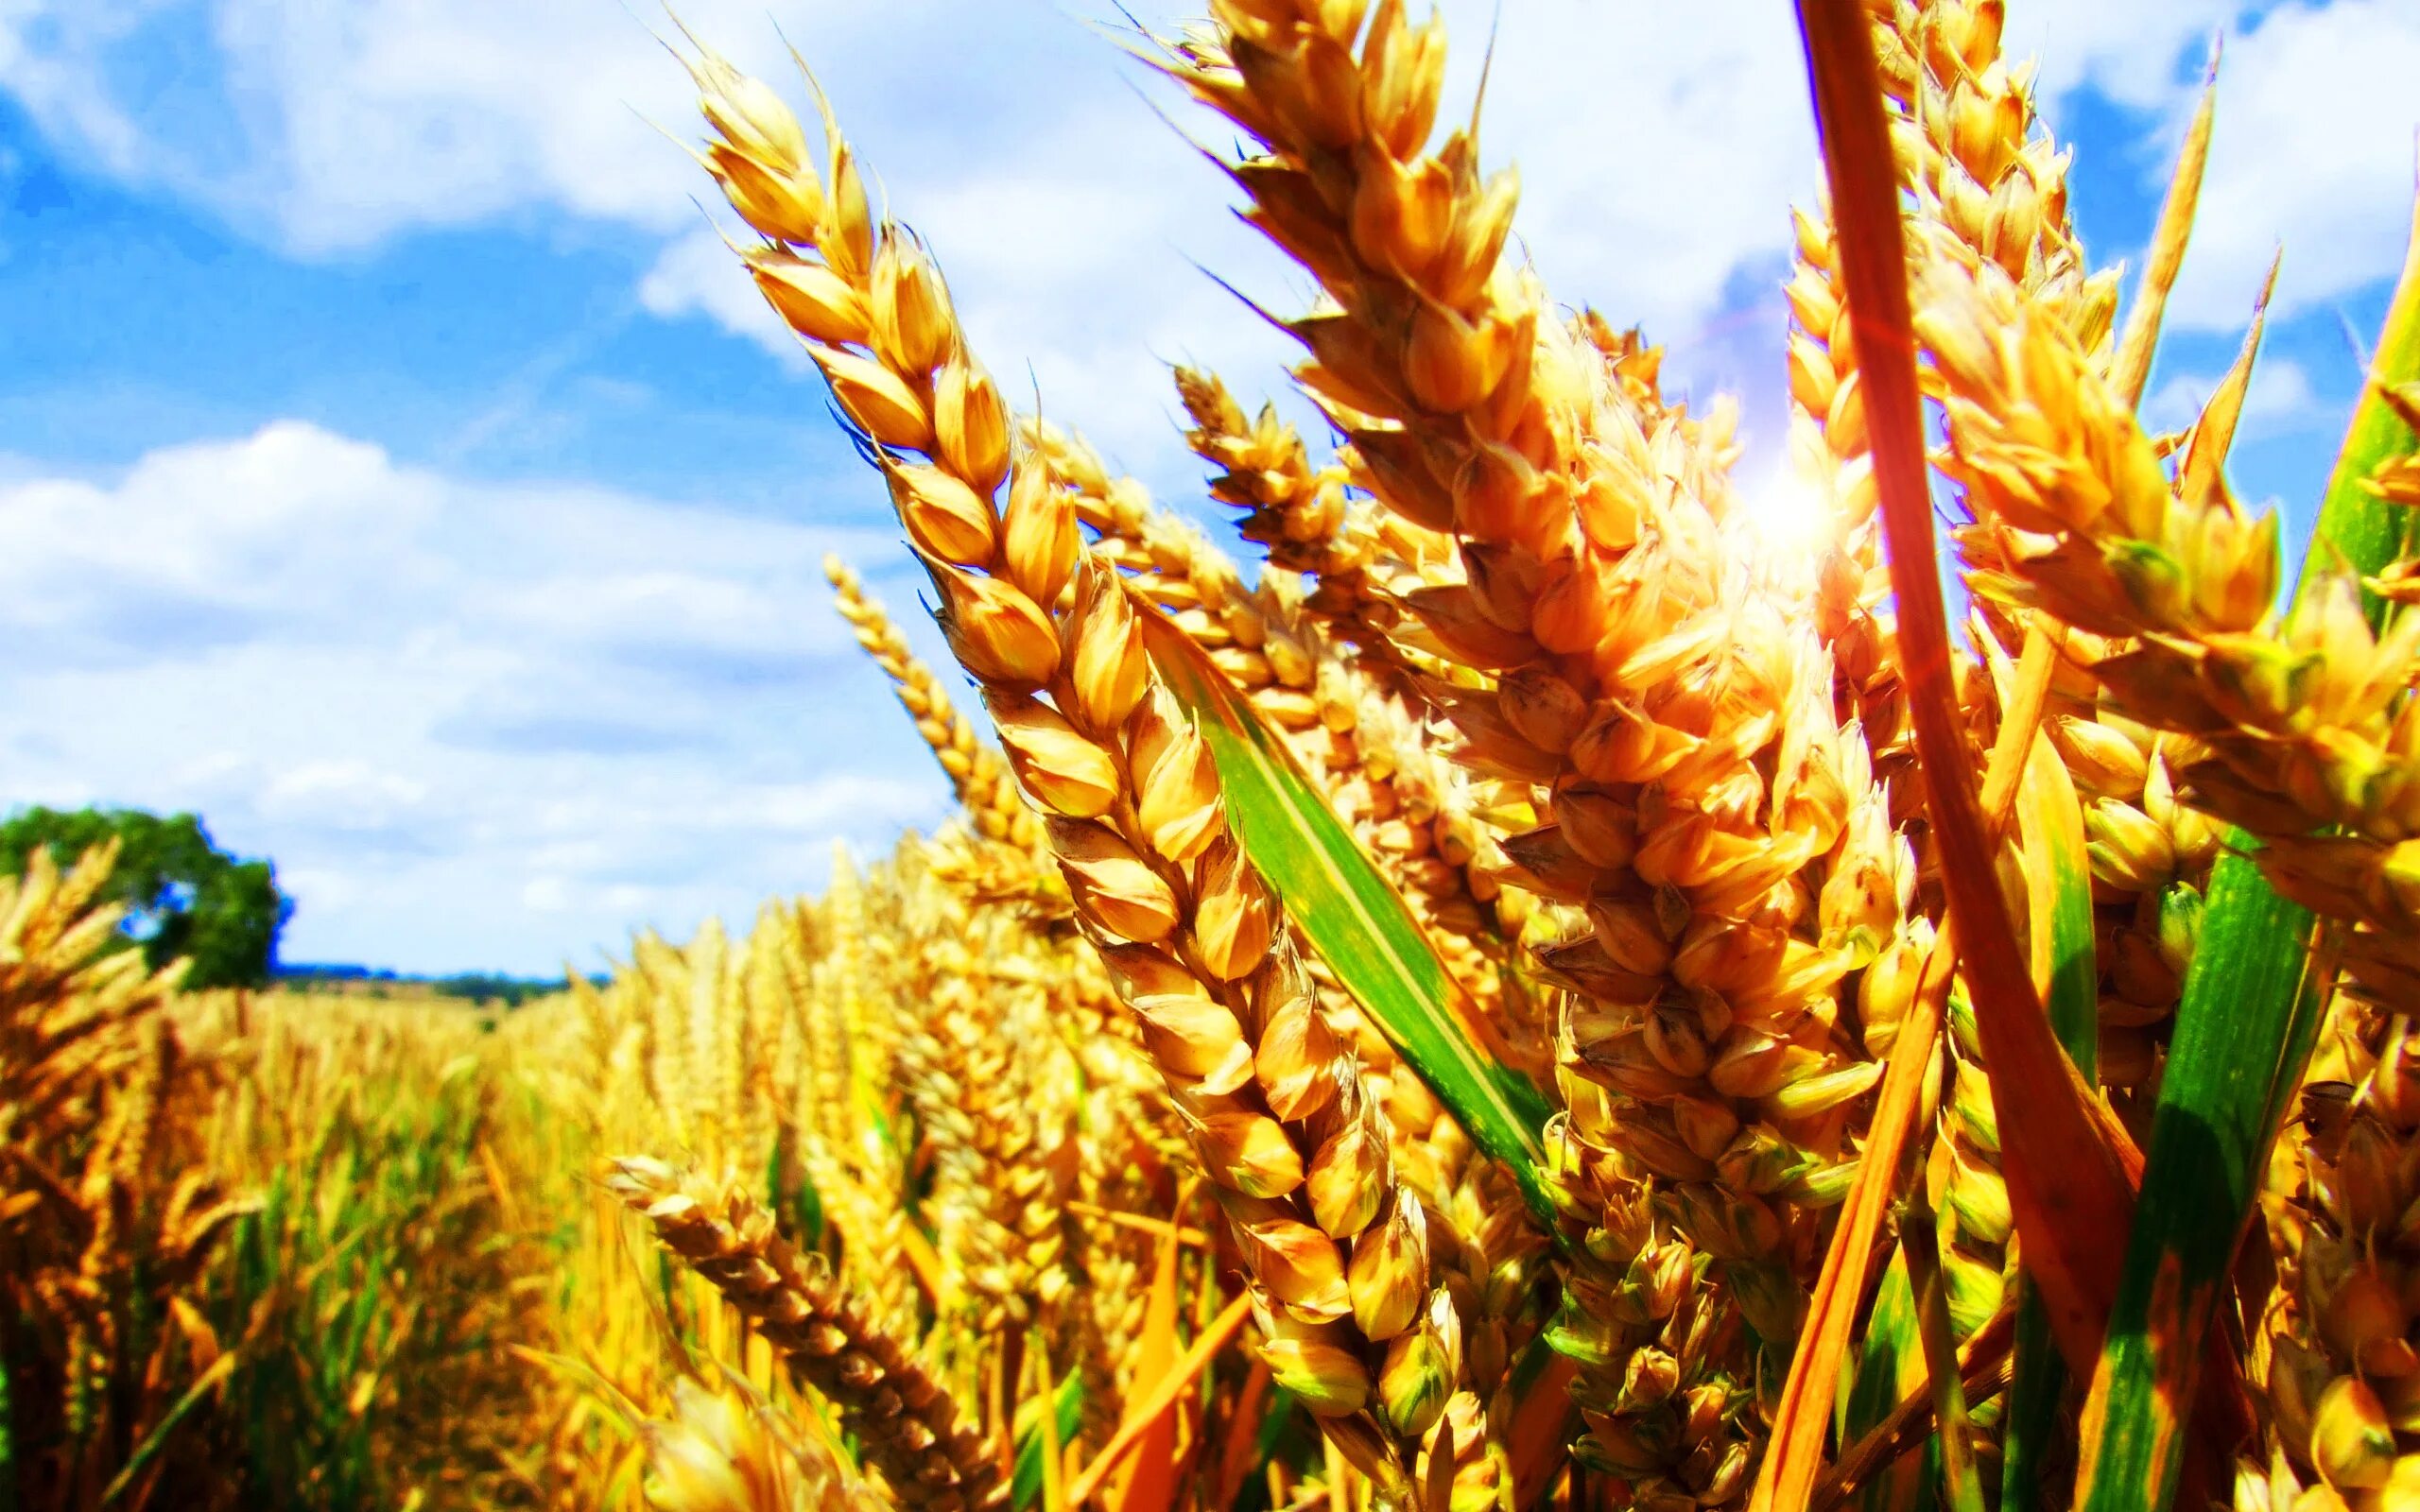 Сельское хозяйство. Пшеница. Сельскохозяйственные культуры. Зерновые культуры. Сообщение на тему культурные сельскохозяйственные растения